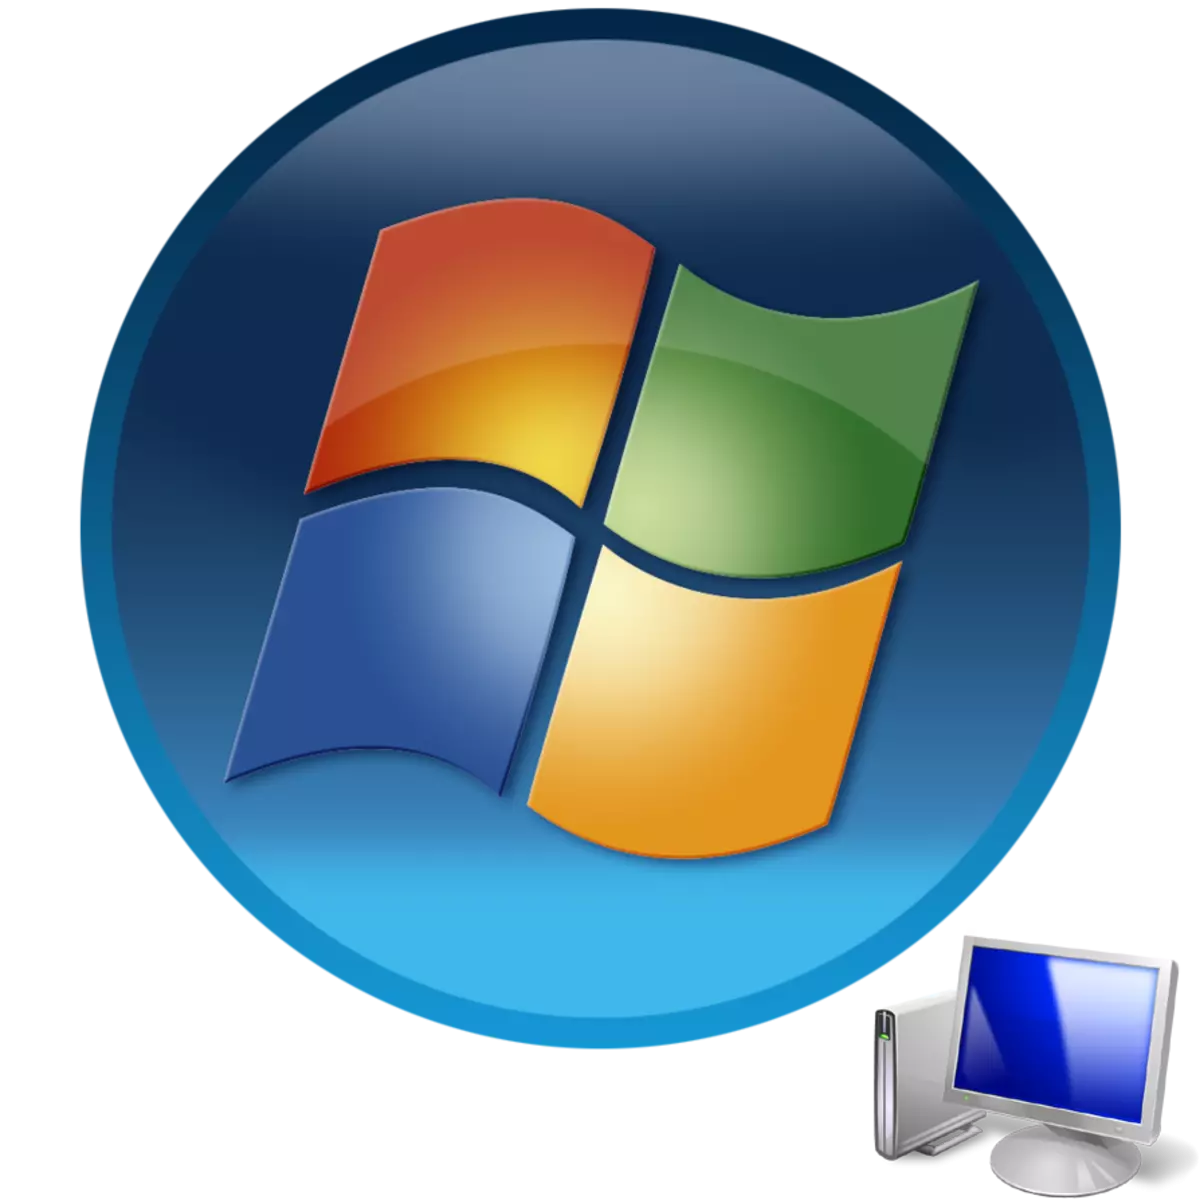 Εκκίνηση υπολογιστή με λειτουργικό σύστημα Windows 7